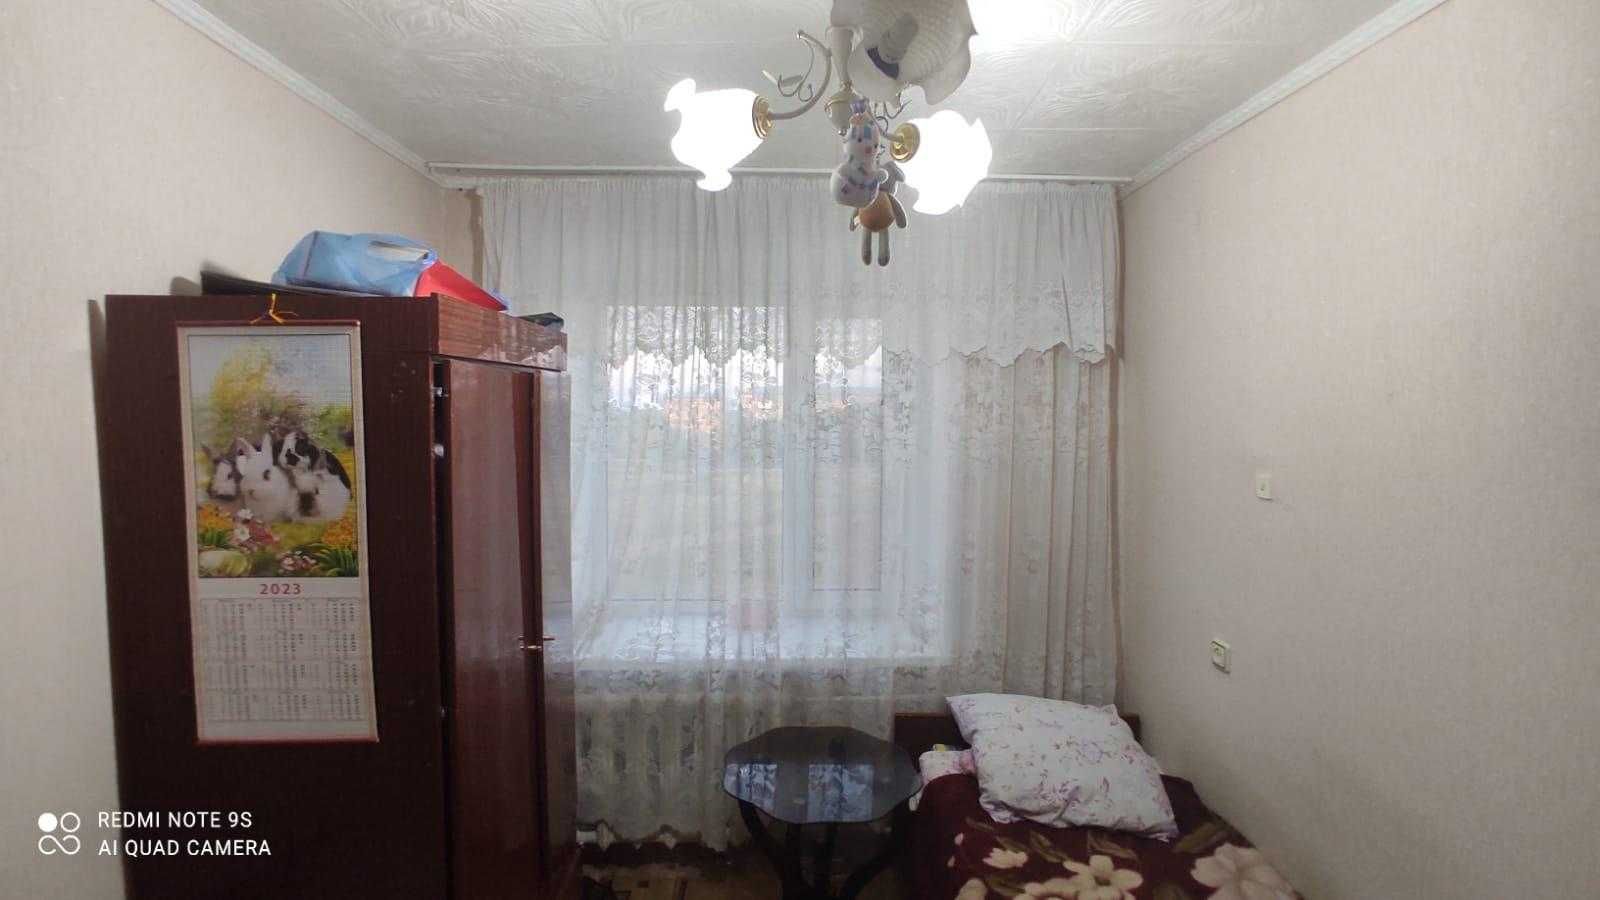 Продам 3-х комнатную квартиру в перспективном районе Сортировки!